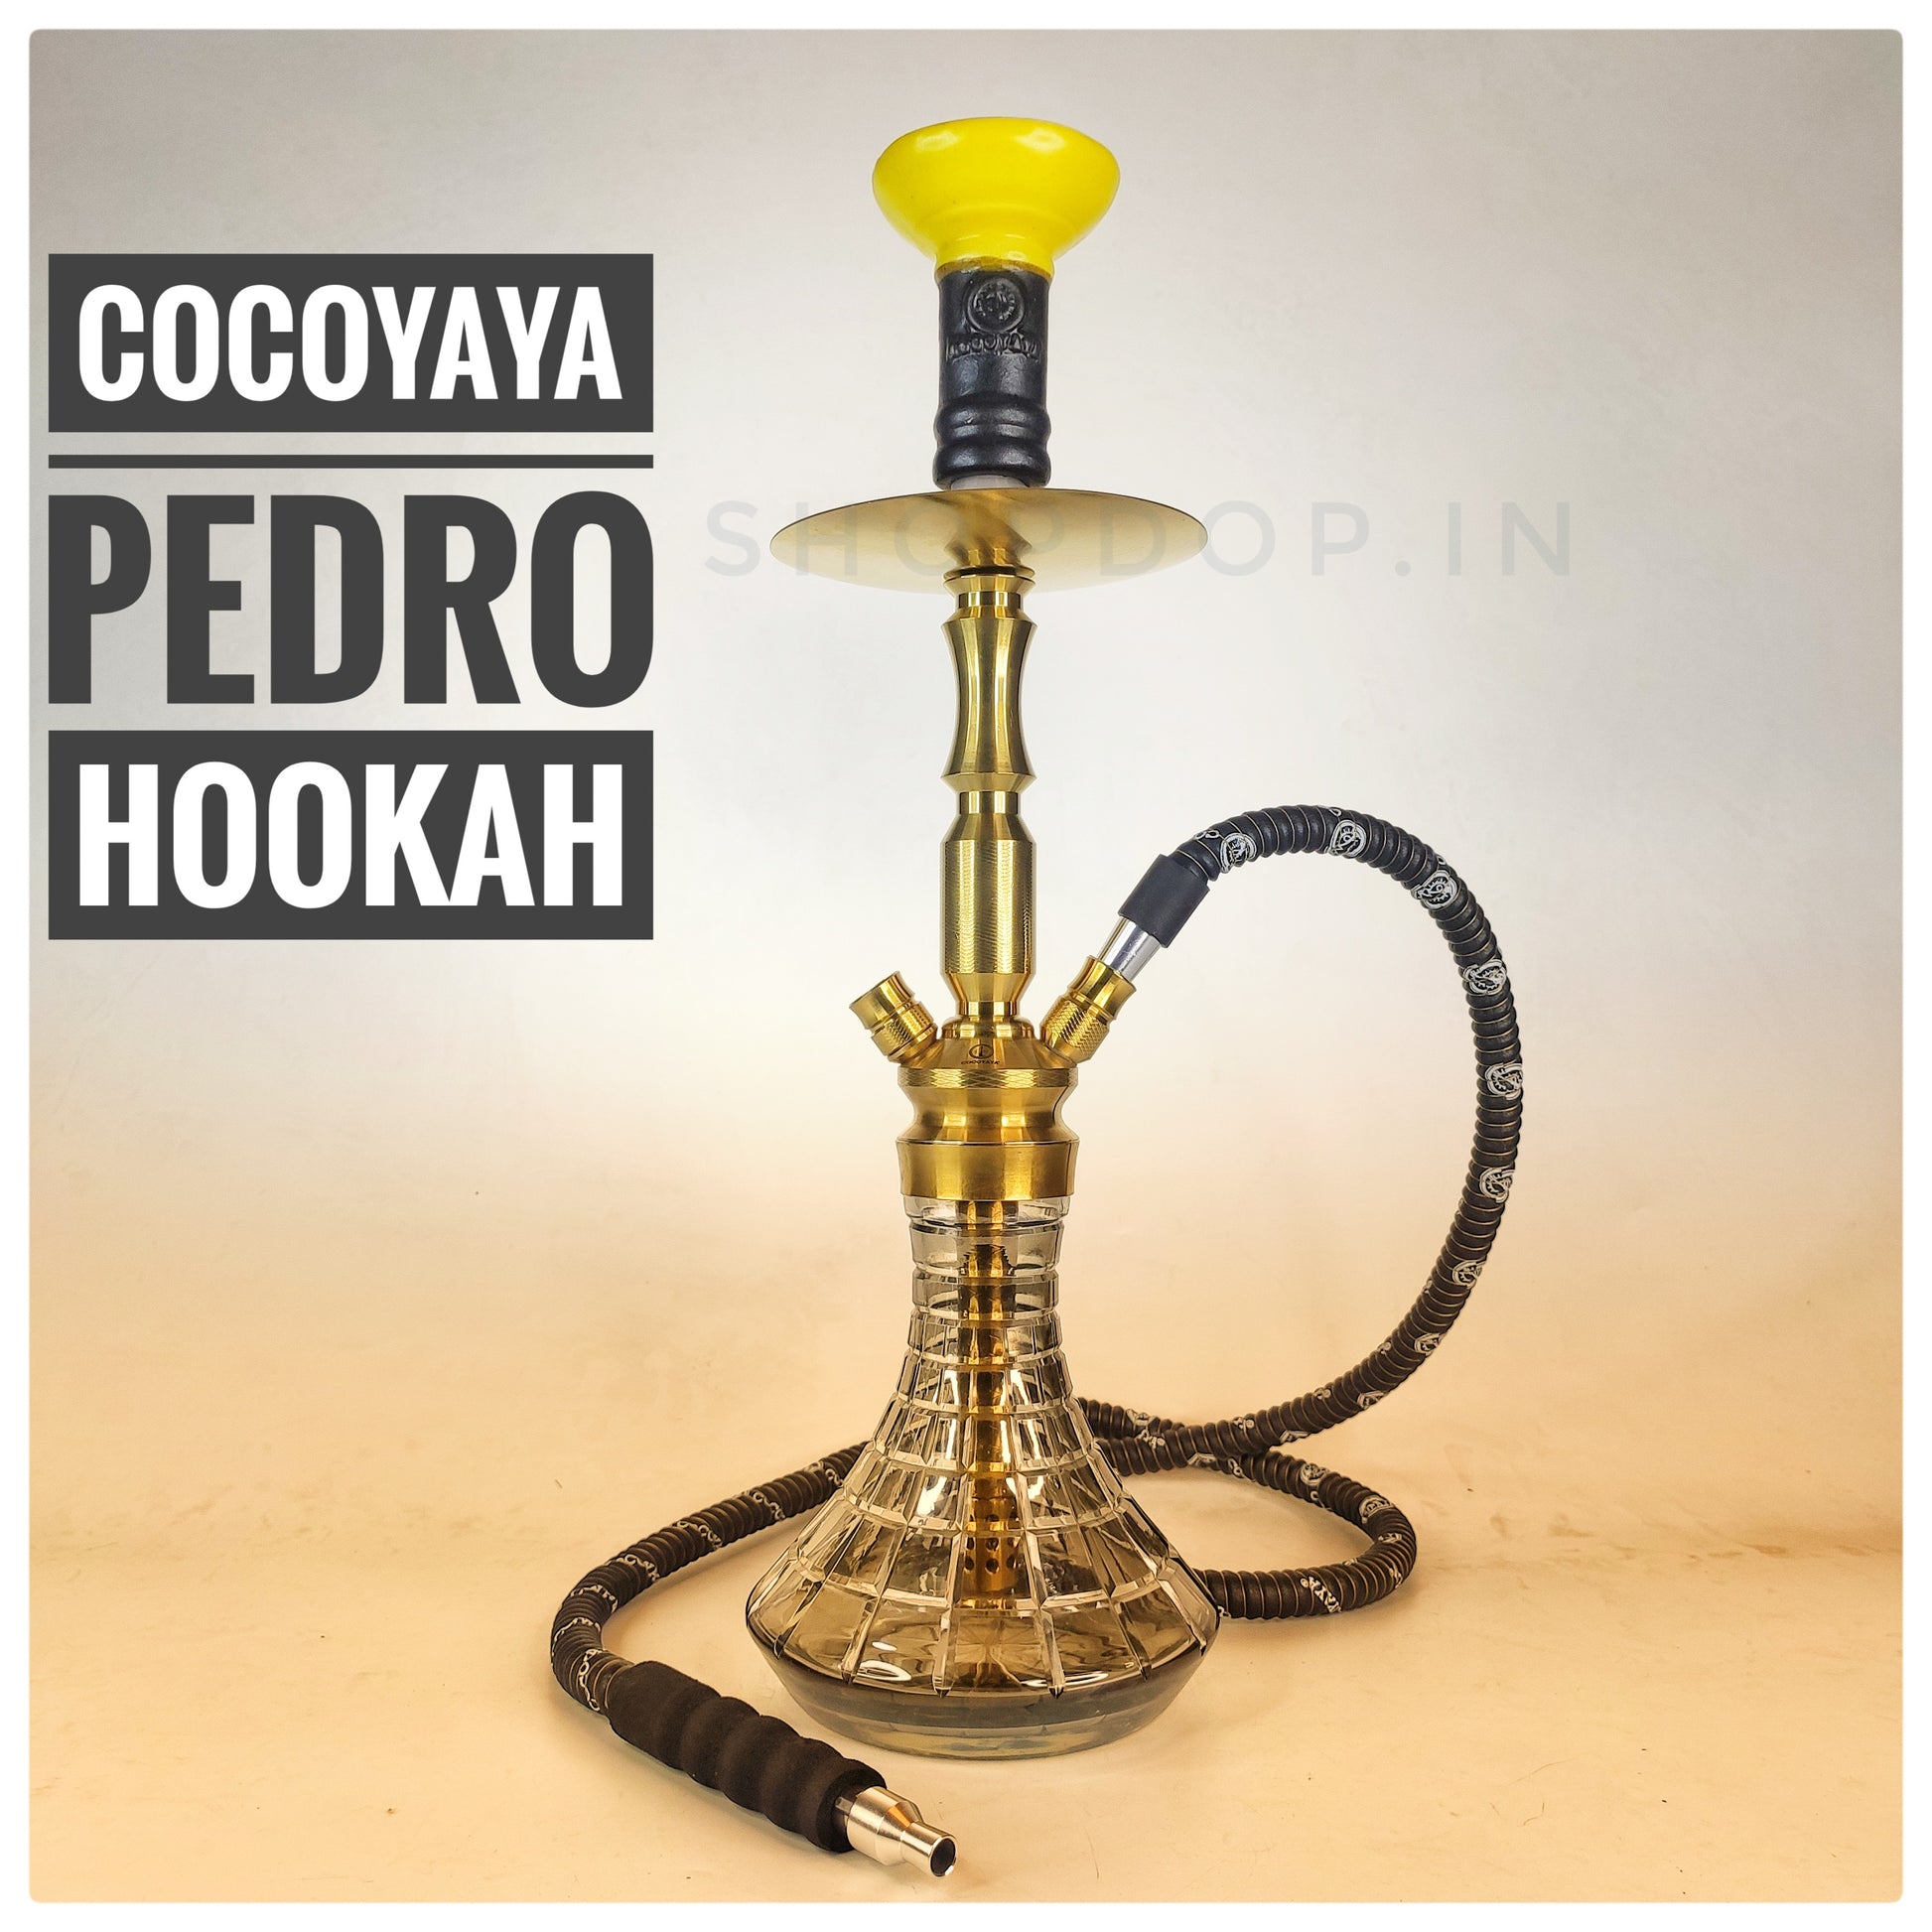 COCOYAYA Pedro Hookah - Prince Series